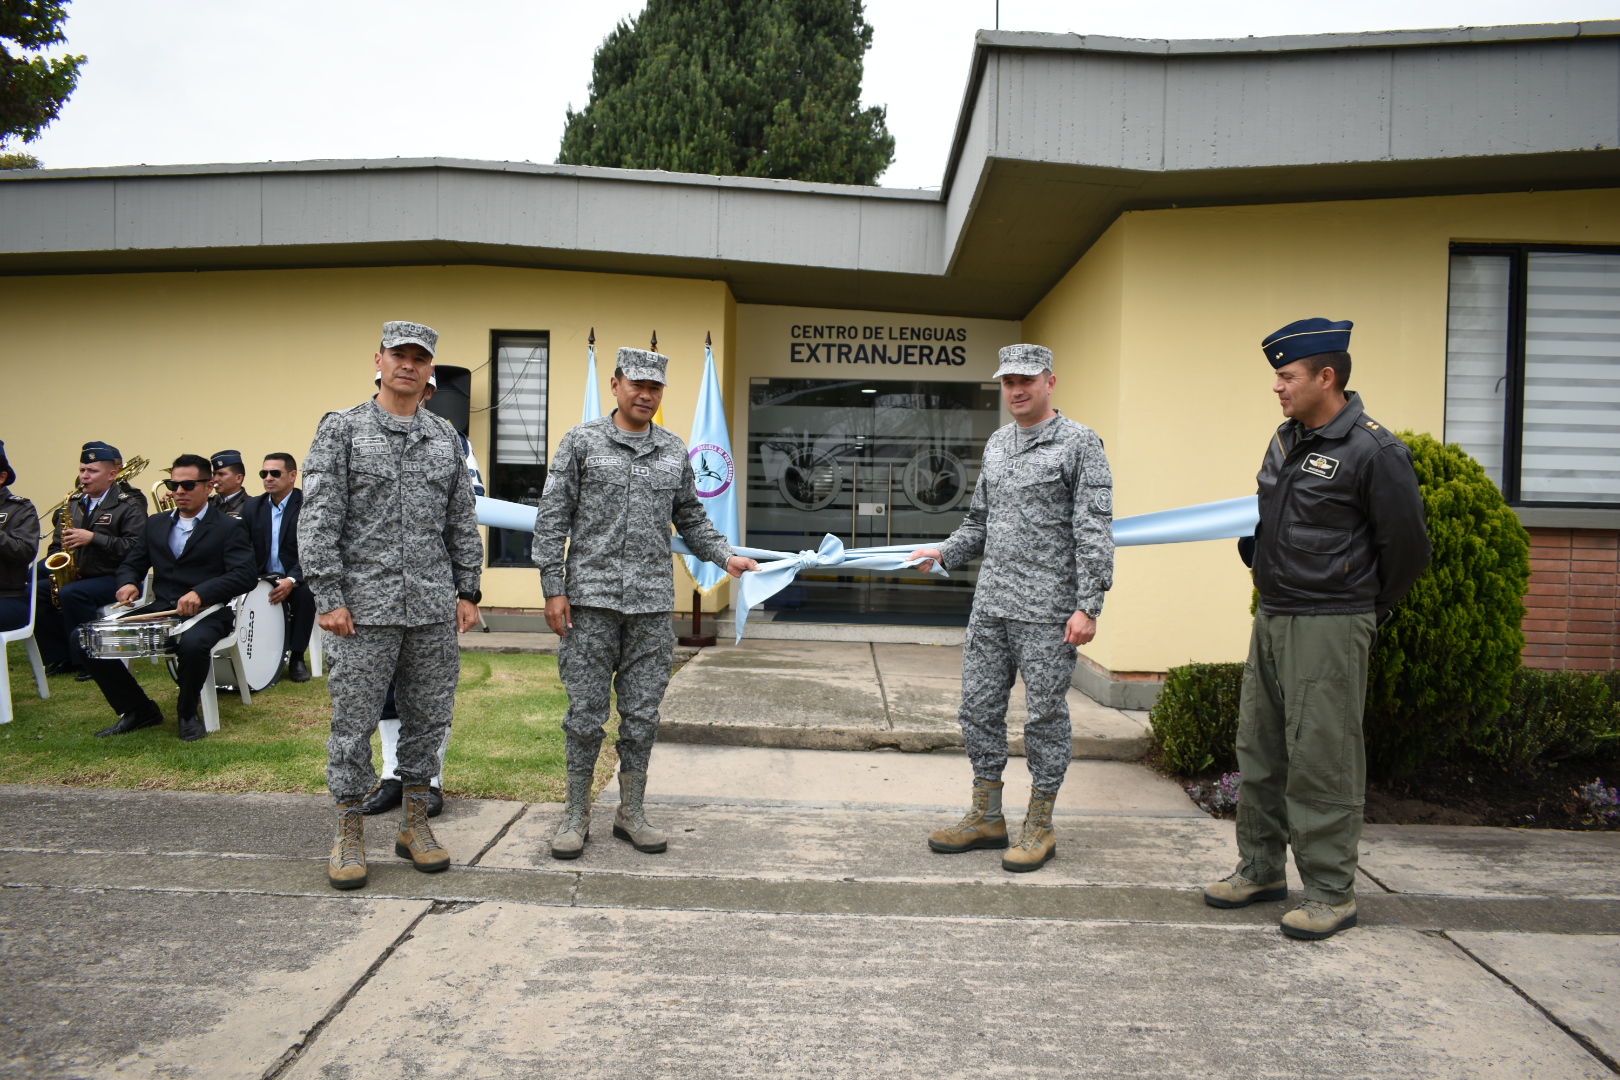 Centro de Lenguas Extranjeras de la Fuerza Aérea fue inaugurado como parte de la estrategia multilingüe